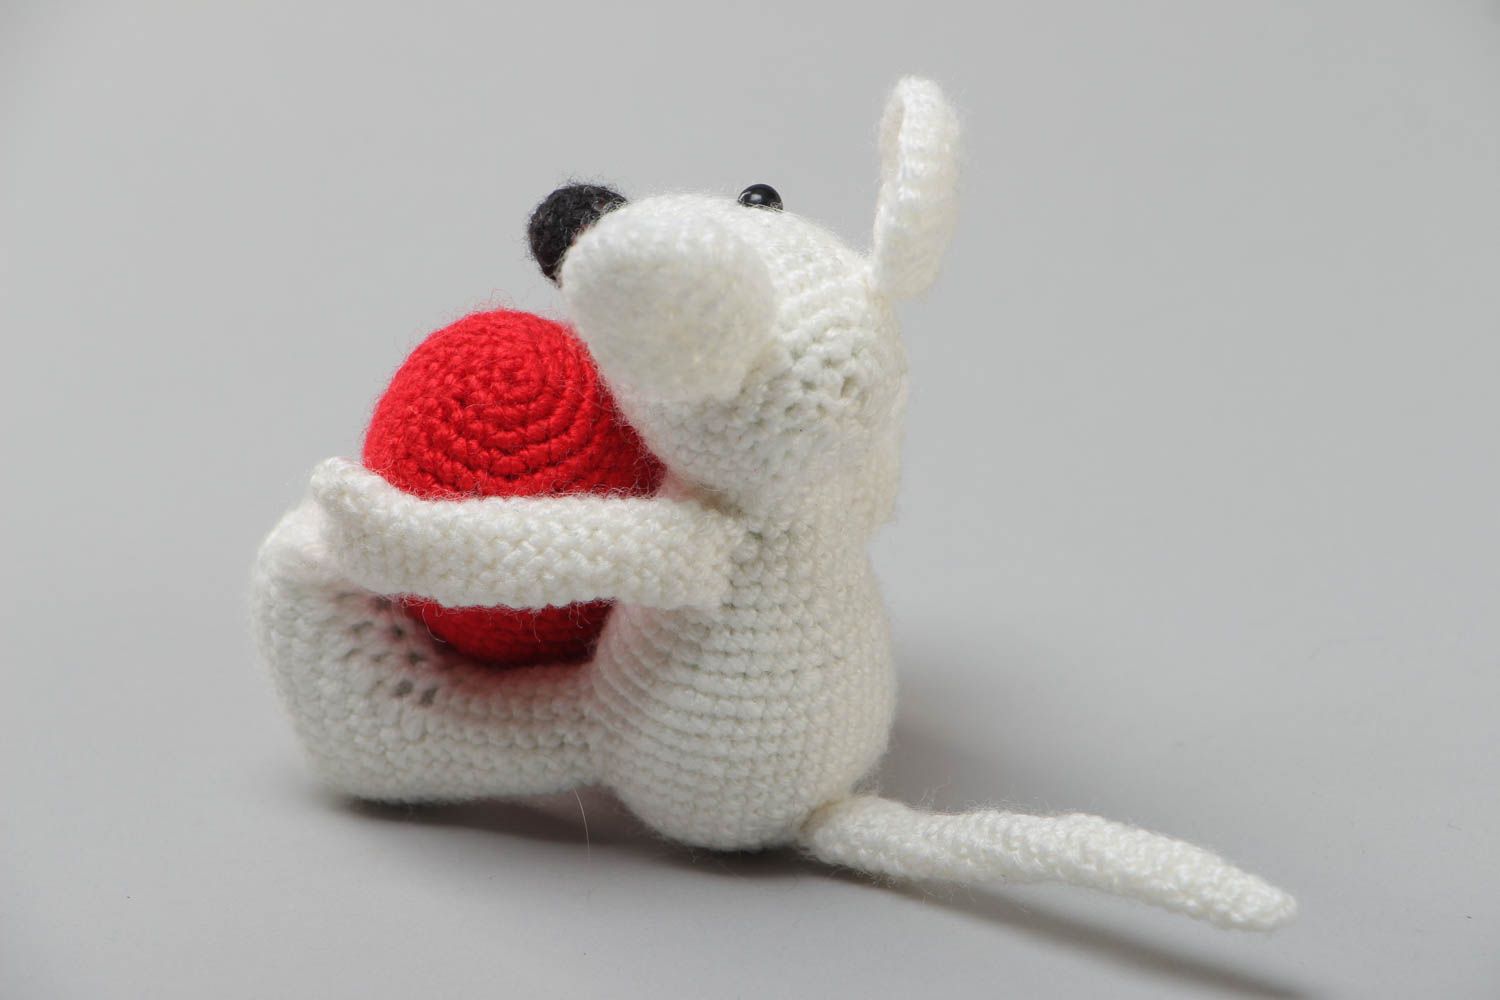 Мягкая игрушка ручной работы вязаная крючком в виде мышки с сердцем хэнд мейд фото 4